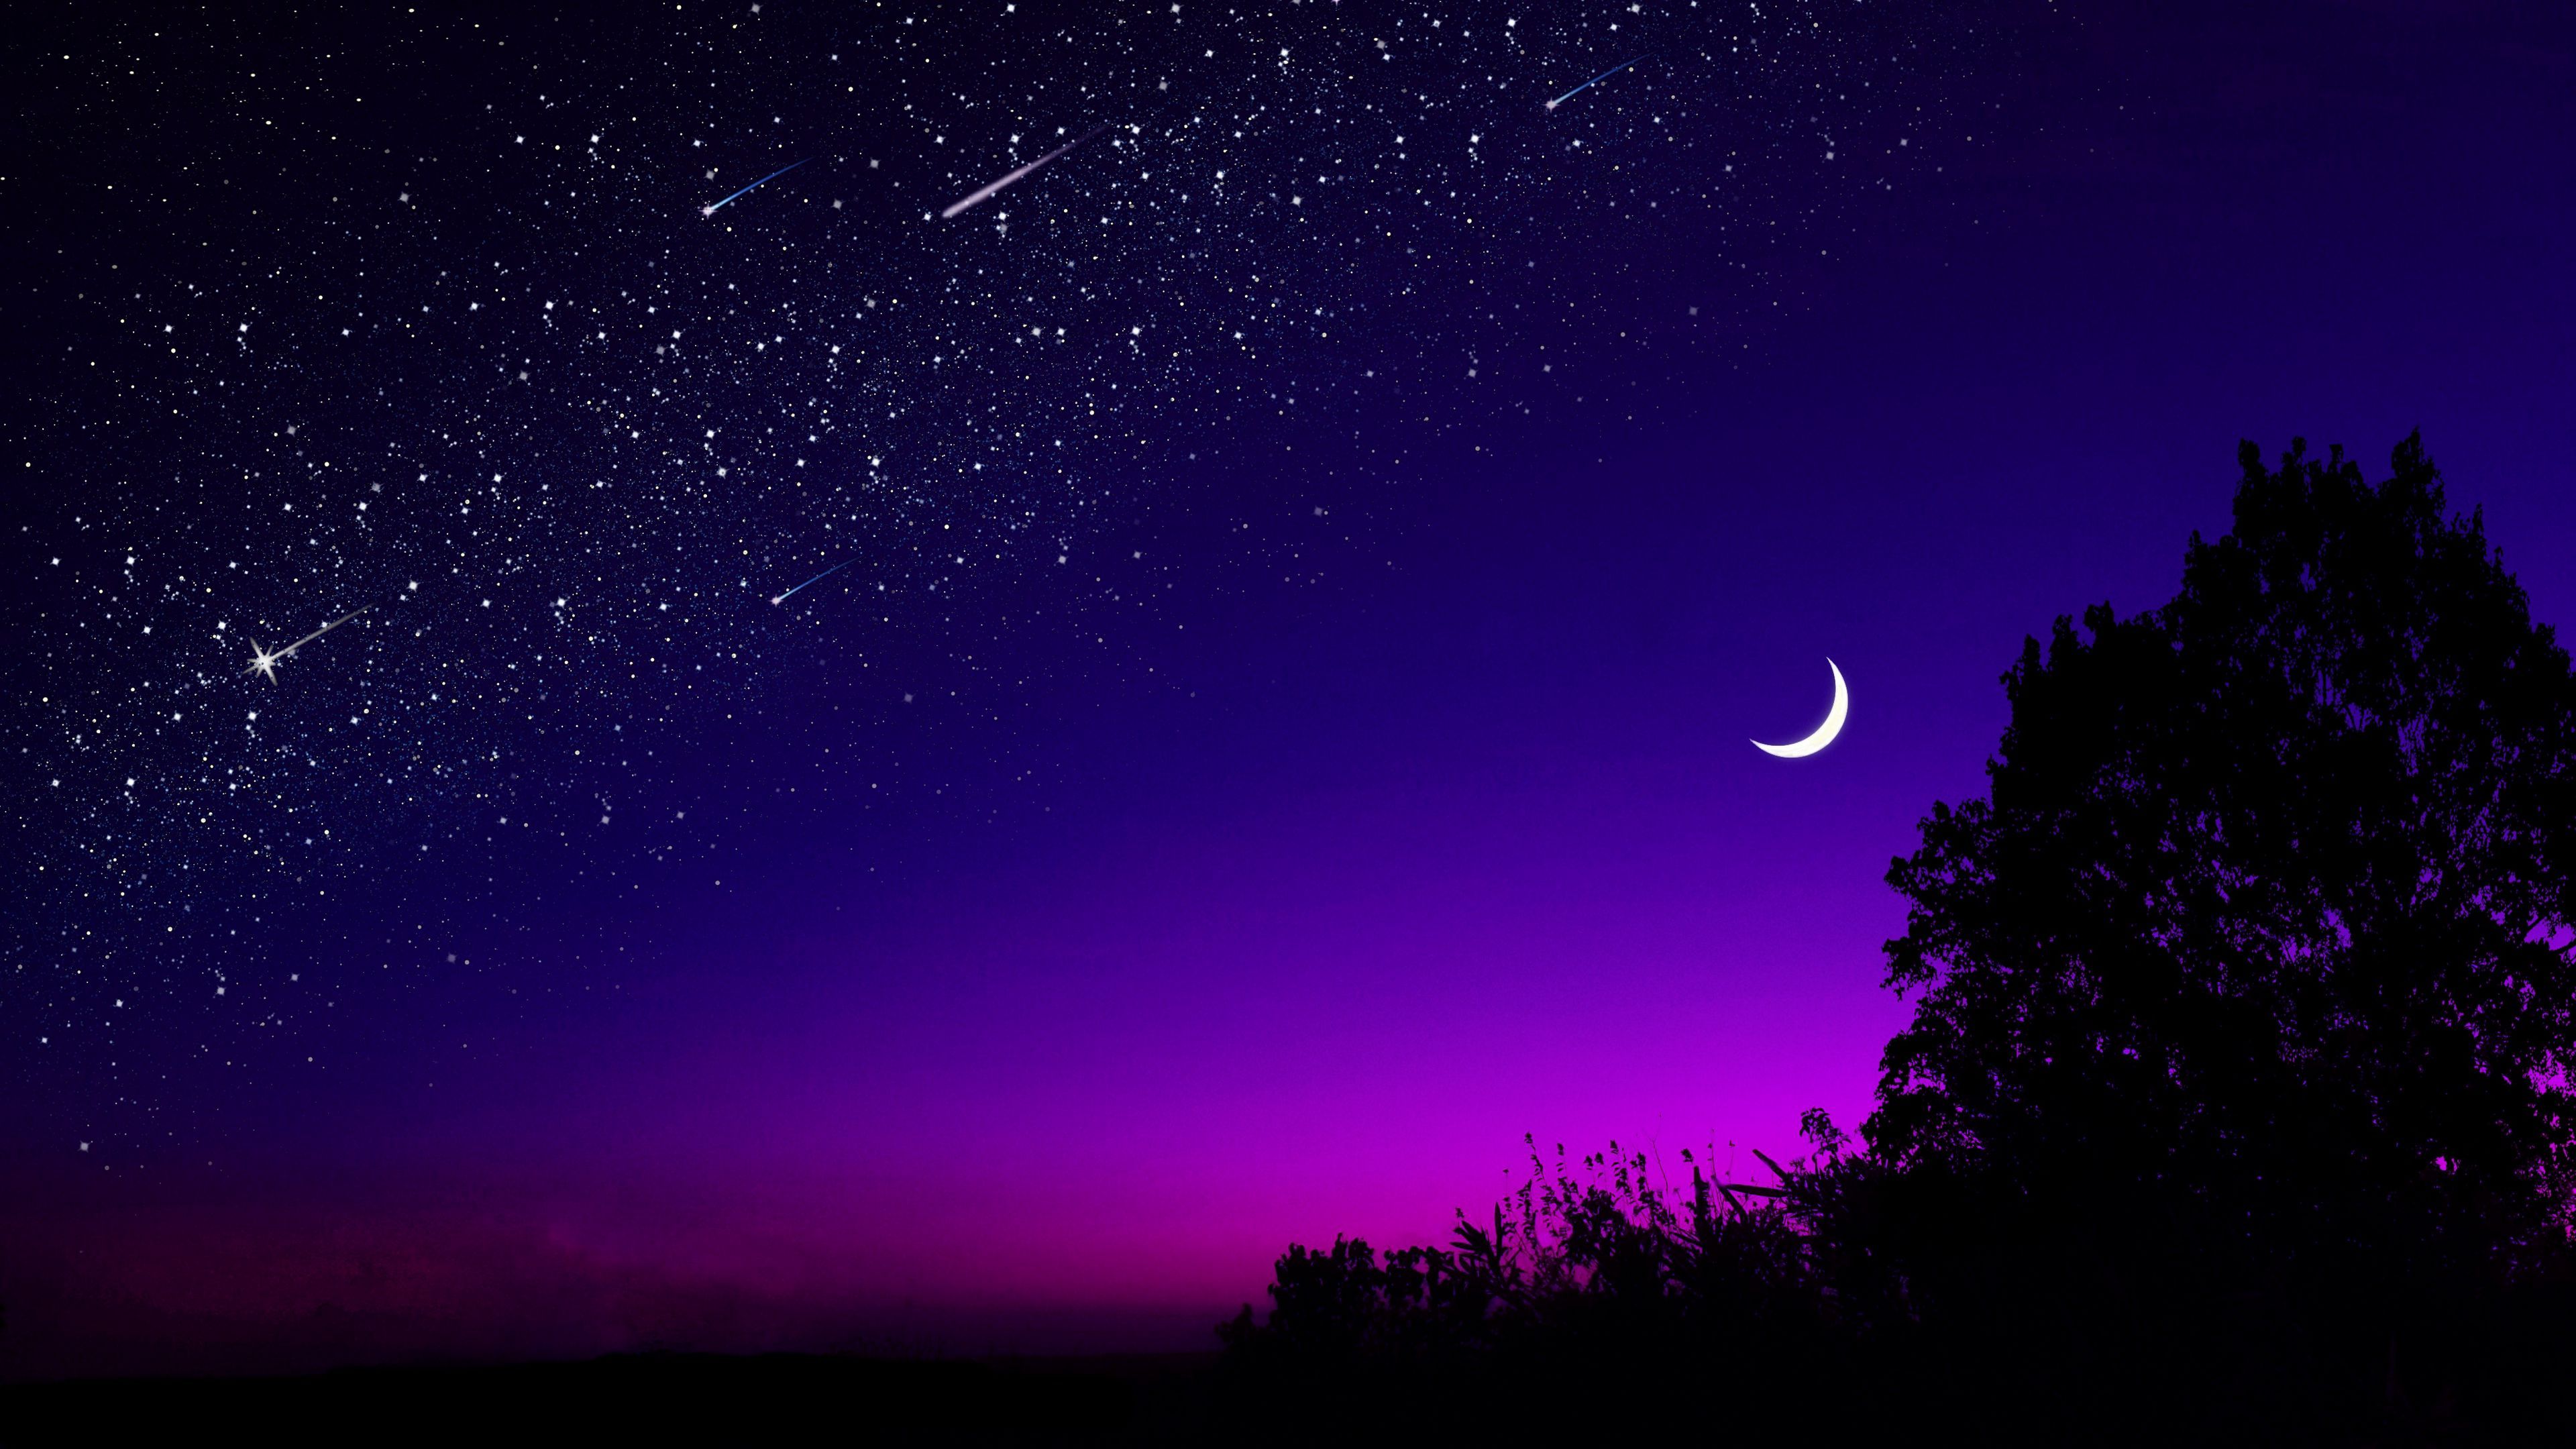 Download wallpaper 3840x2160 moon, tree, starry sky, night, stars, dark 4k uhd 16:9 HD background